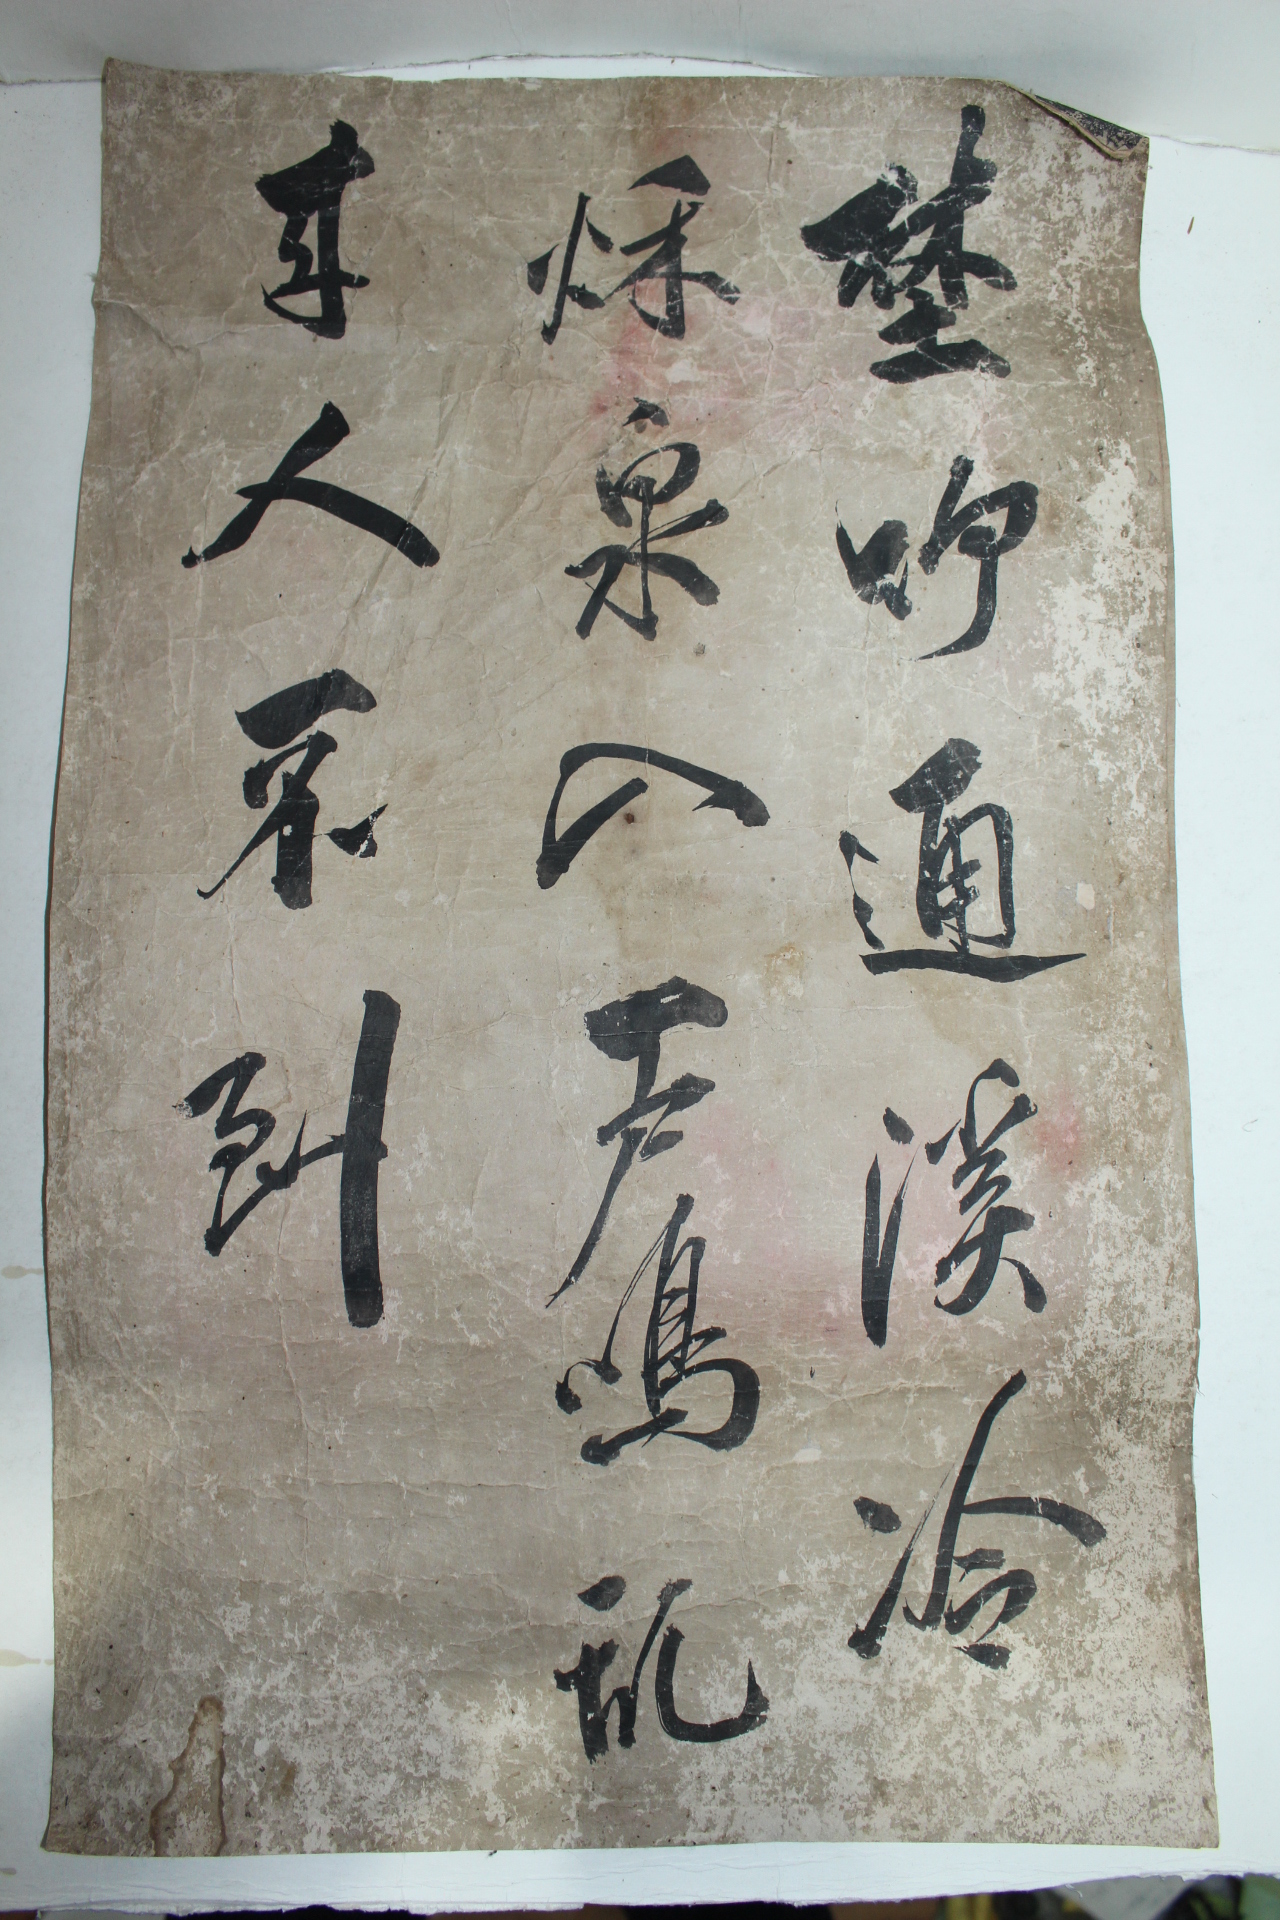 조선시대 다듬이장지에 필사된 필첩 3책